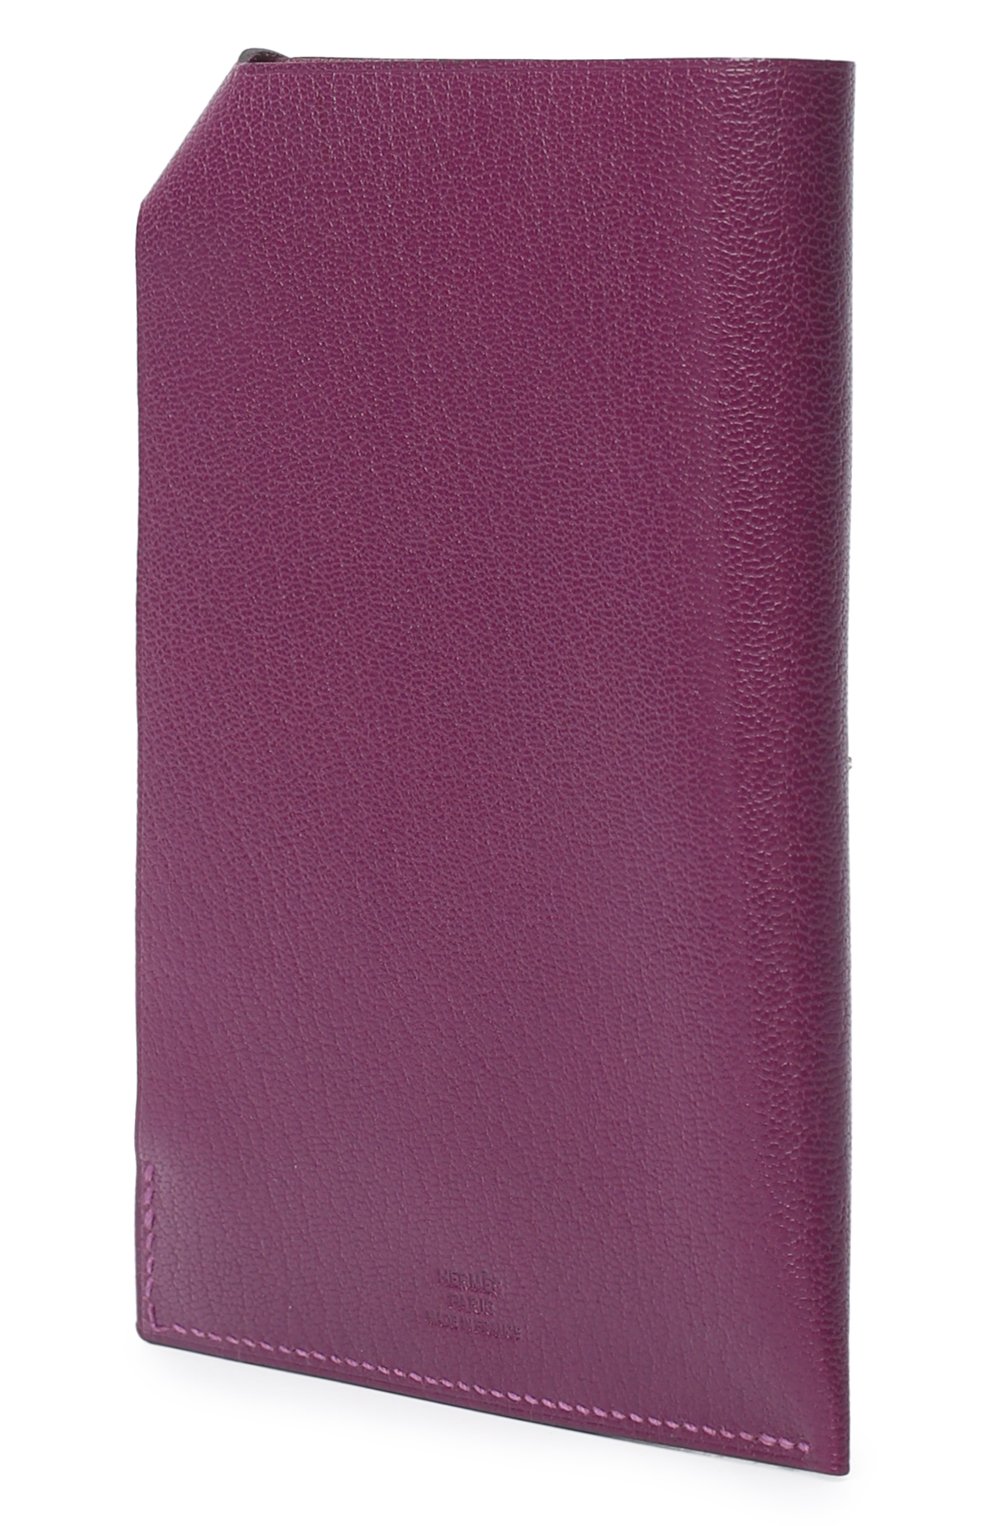 Обложка для паспорта | Hermes | Фиолетовый - 2